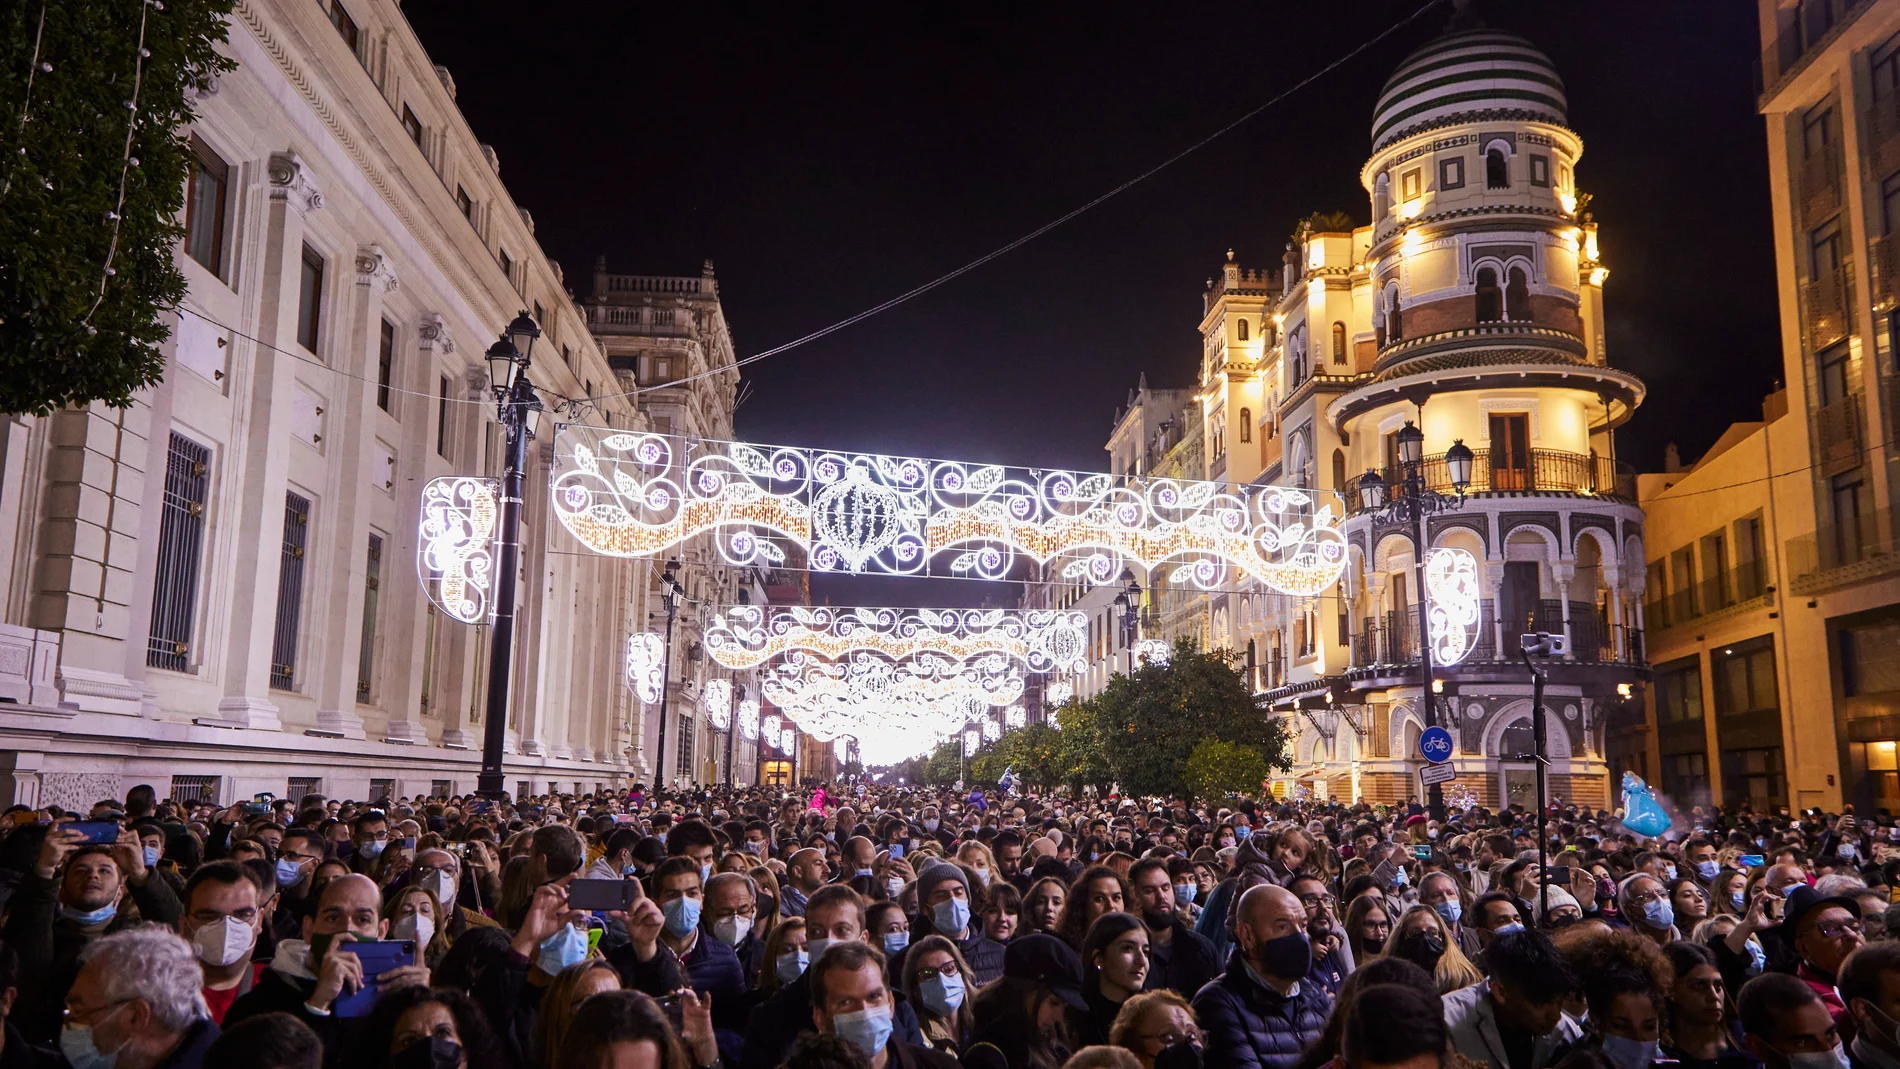 Las fiestas navideñas propician una mayor afluencia de gente en las calles, como en la imagen tomada en el centro de Sevilla